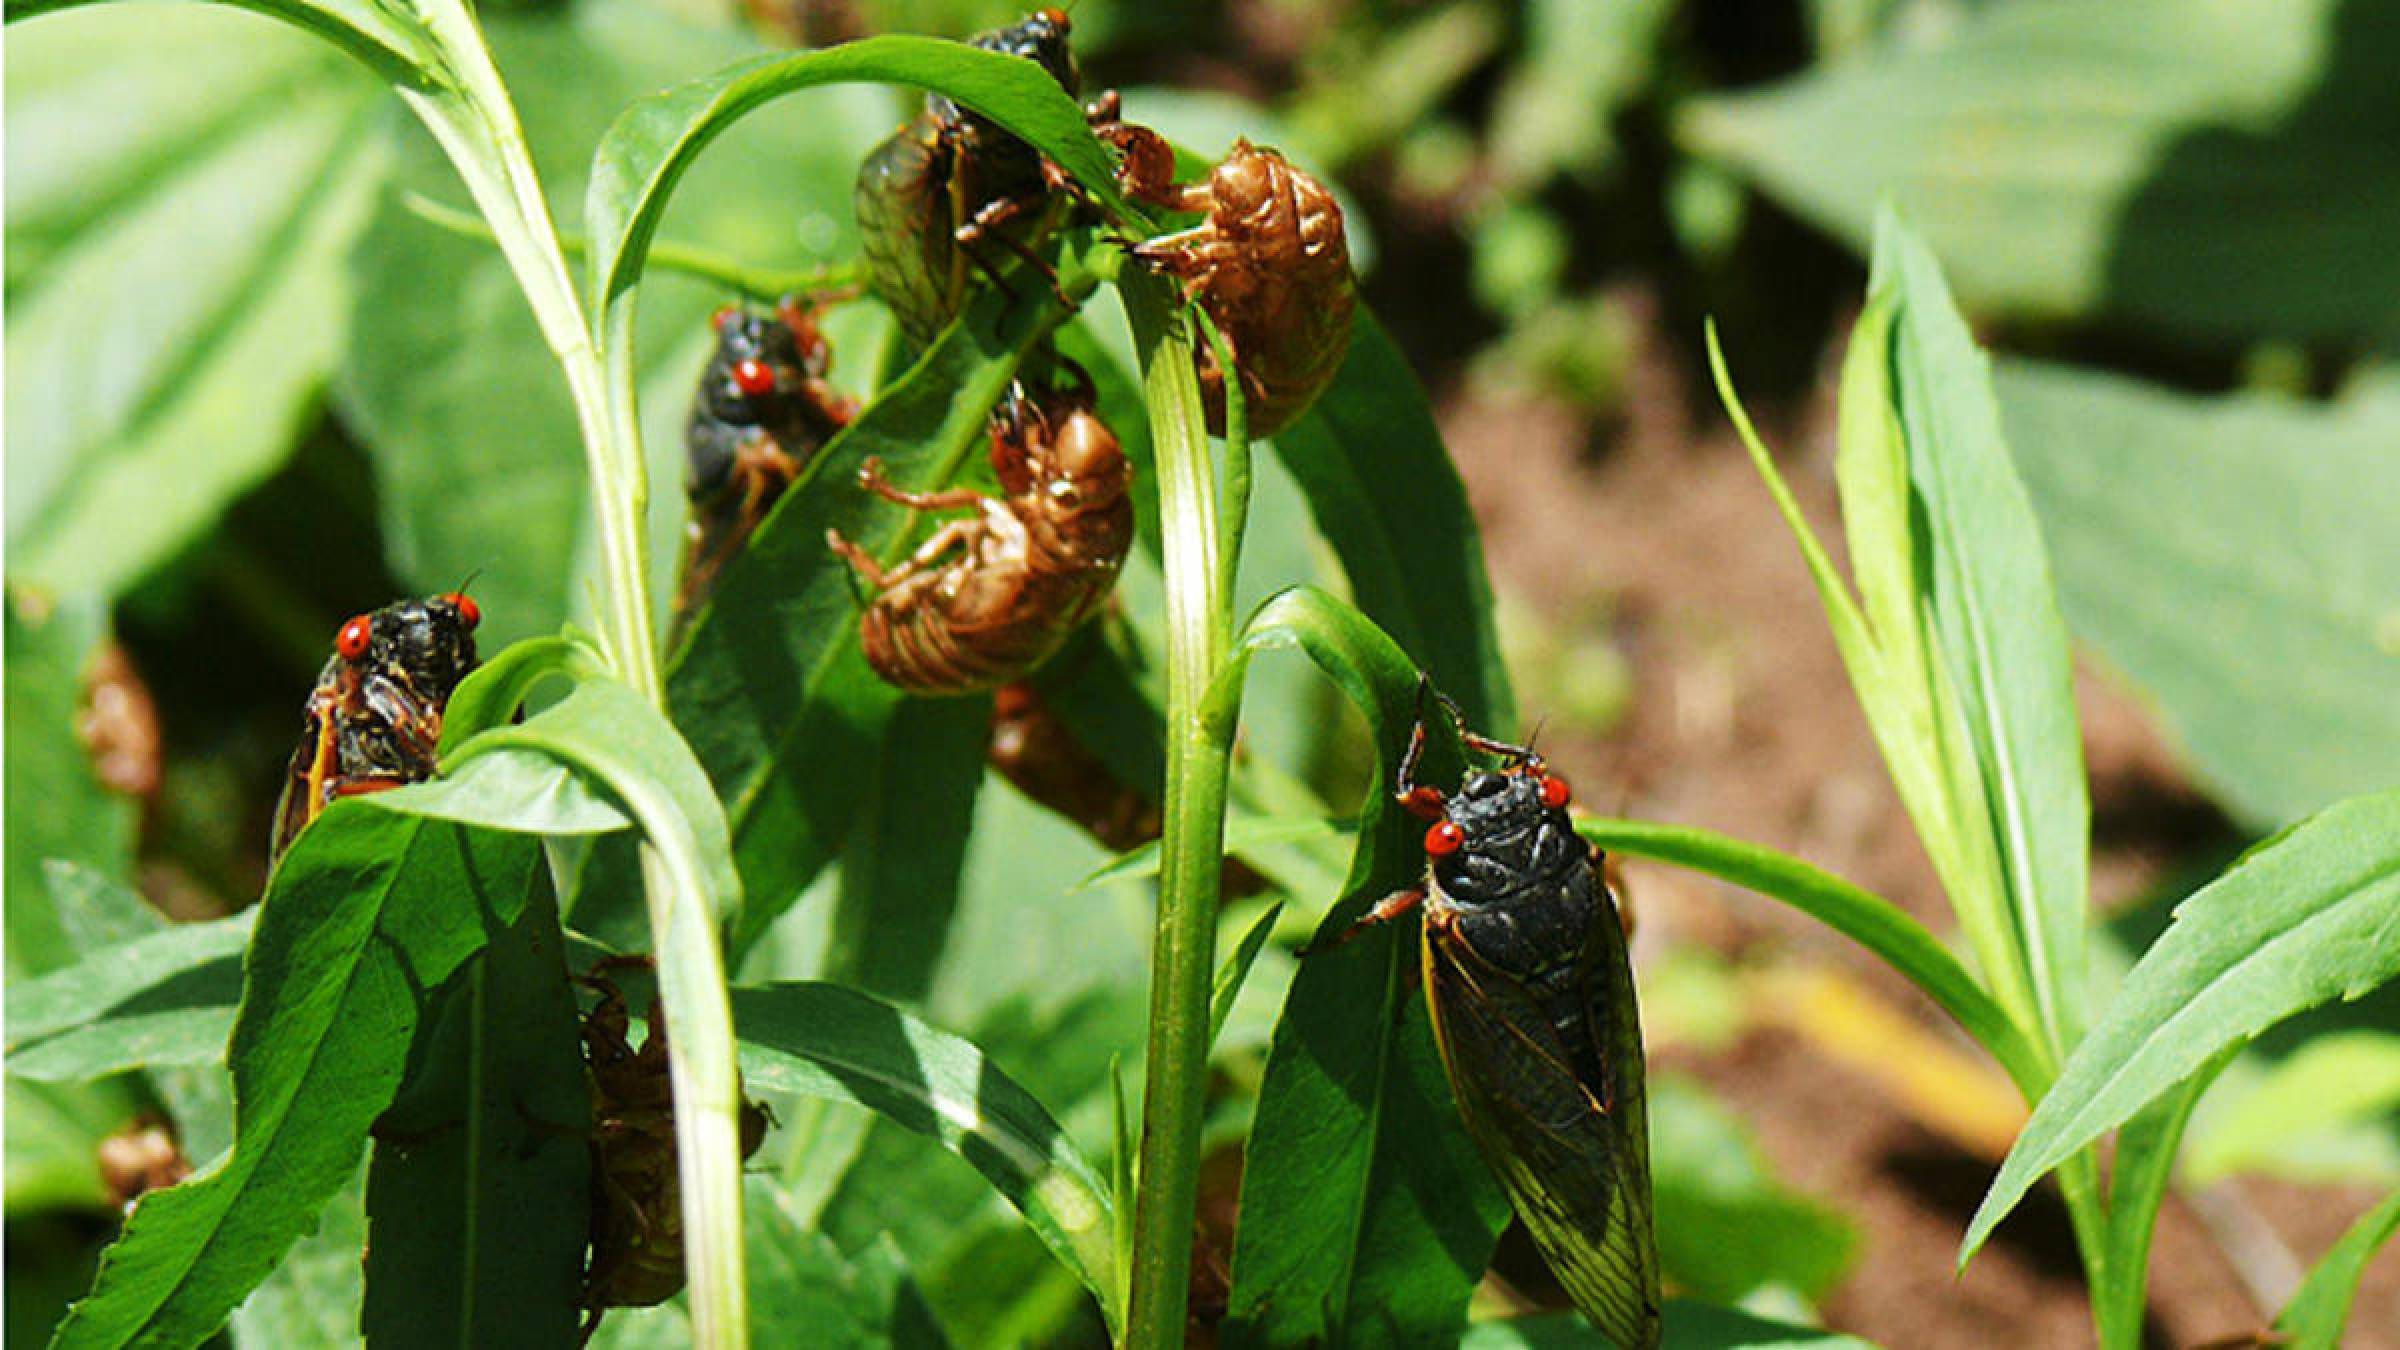 17 Year Cicadas